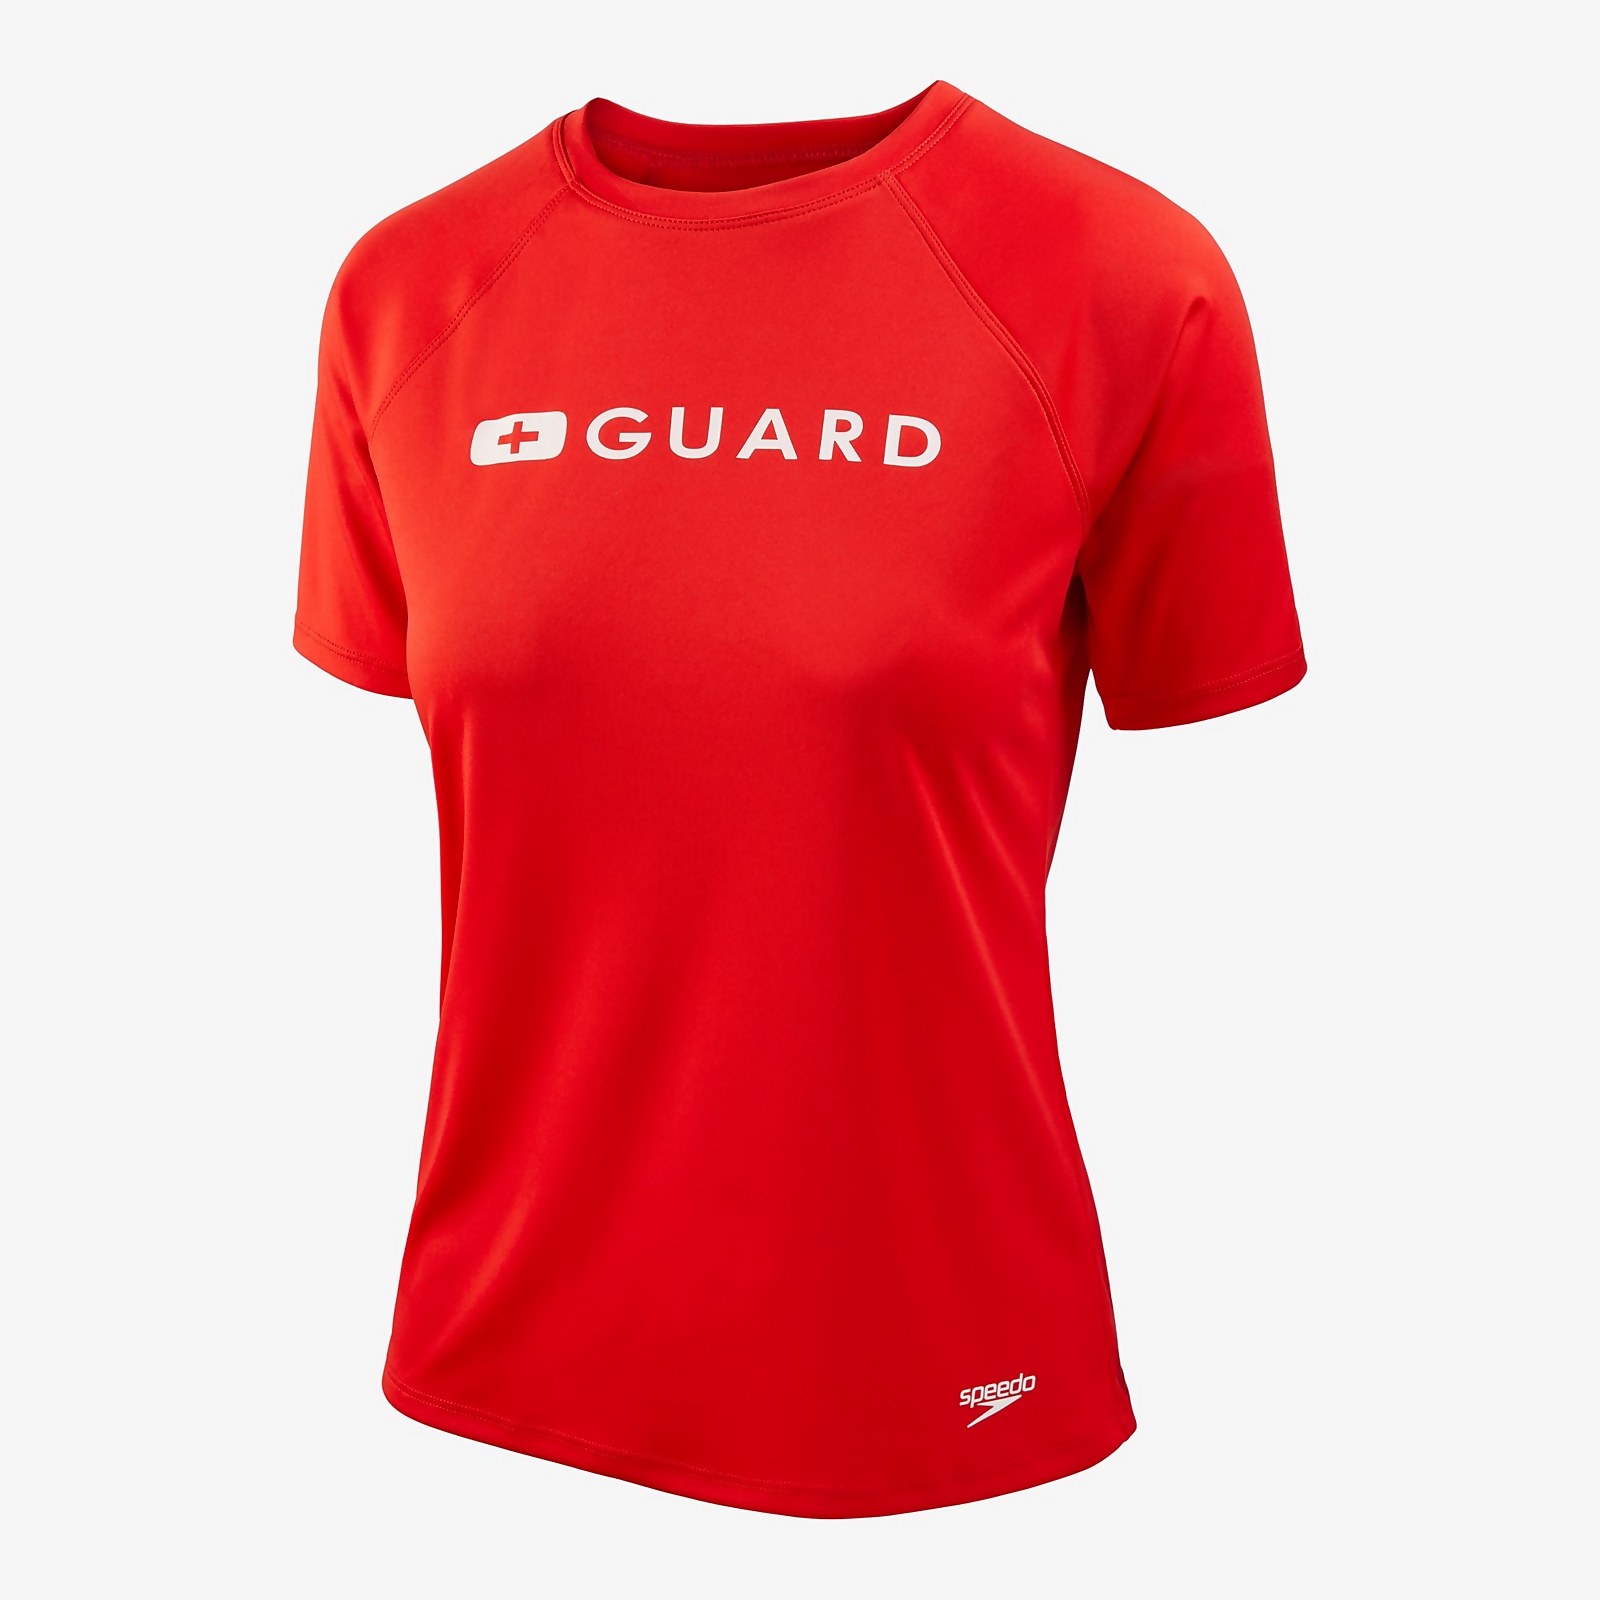 Speedo  Guard Solid Swim Tee - S    : Red